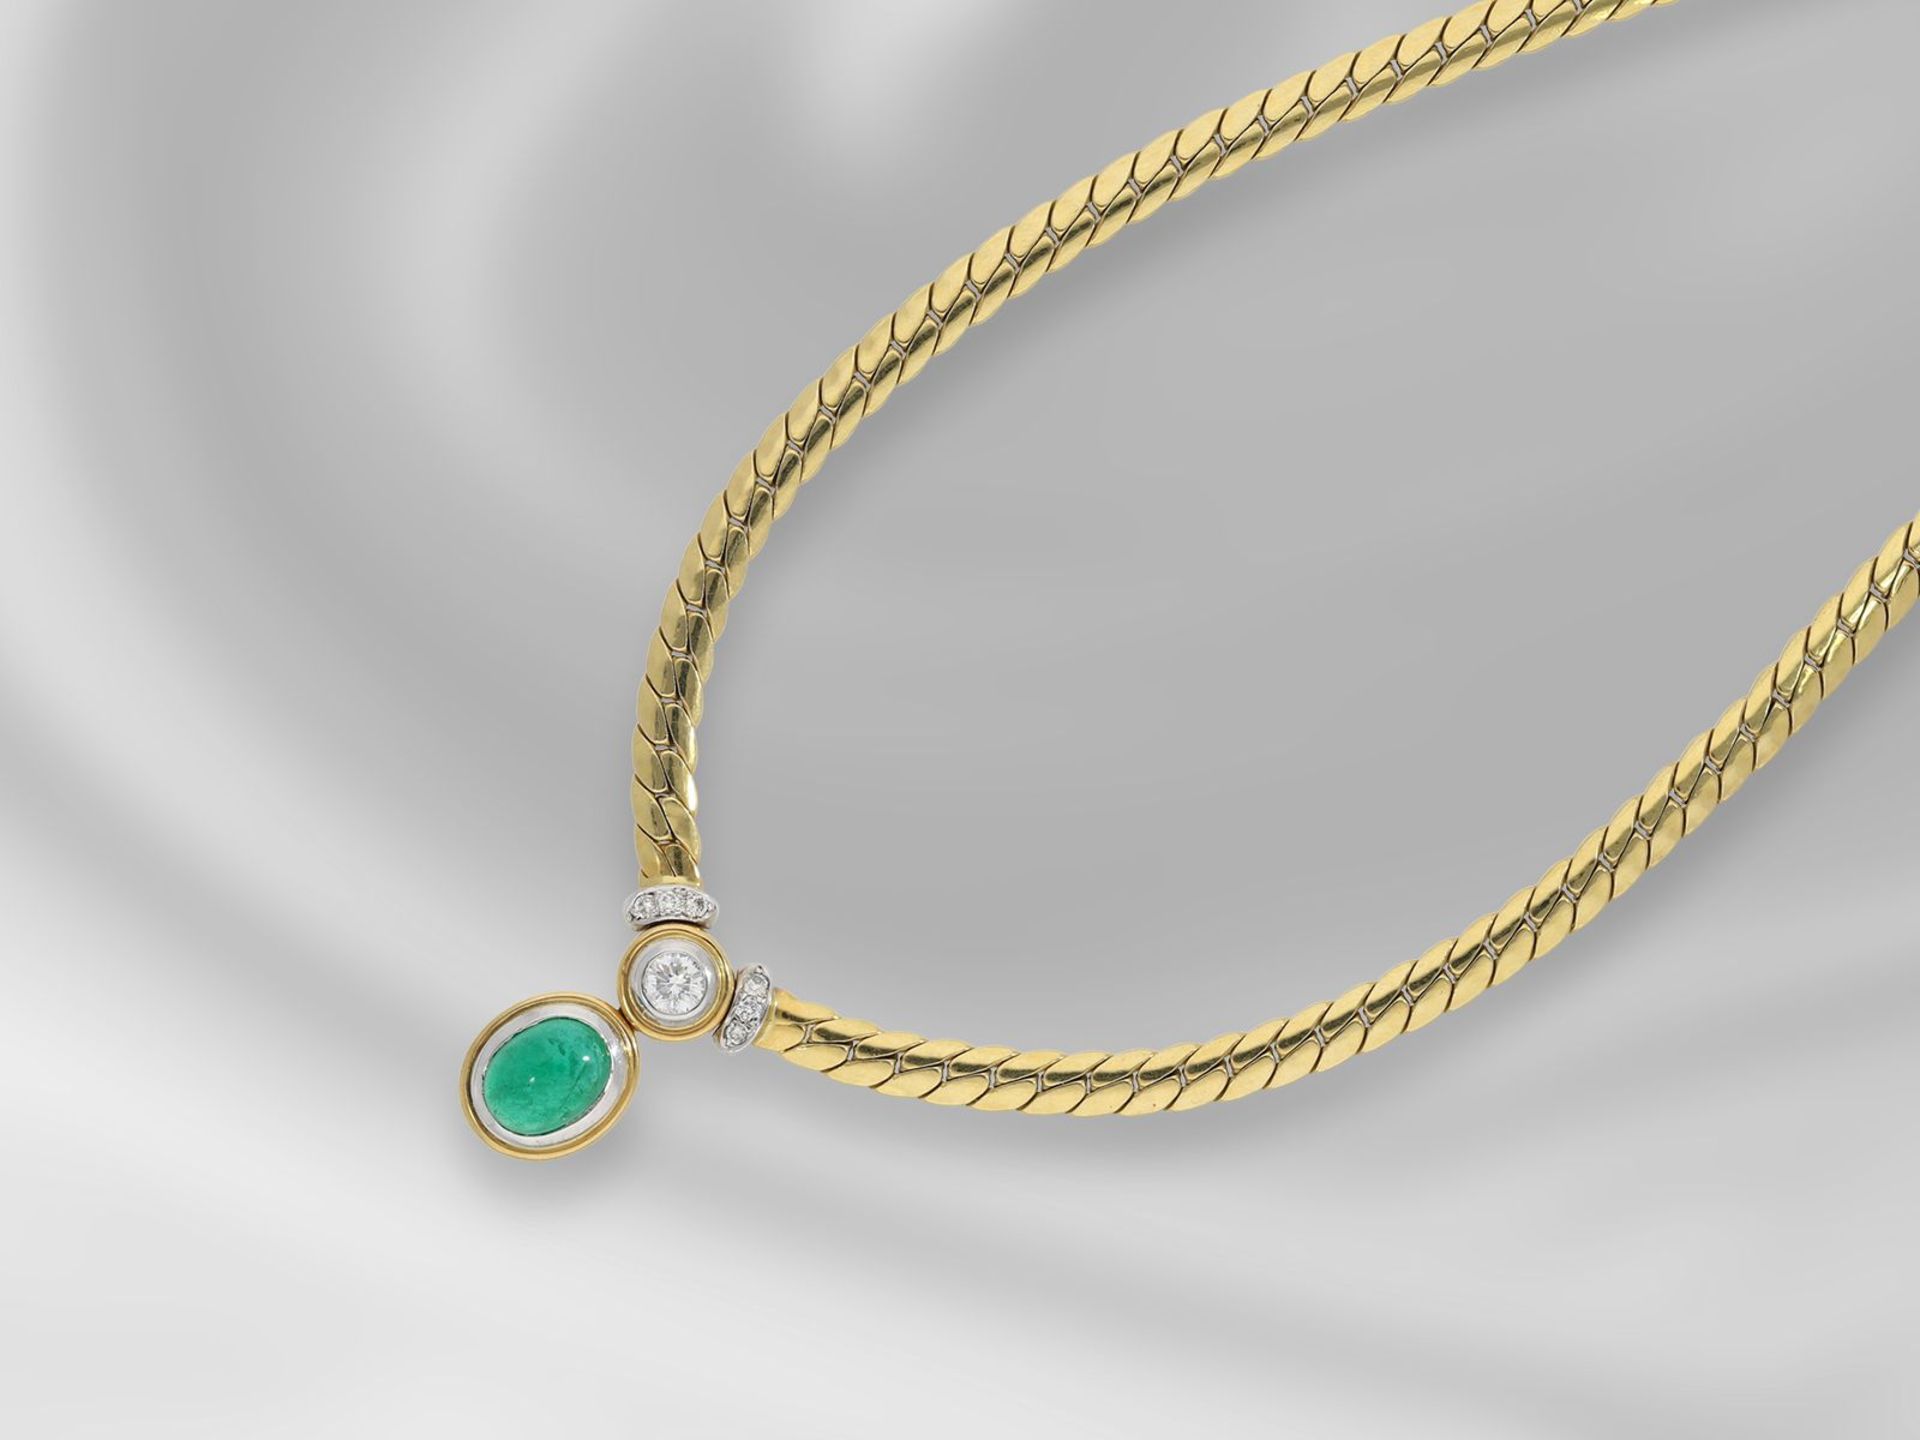 Kette/Collier: sehr dekoratives und ehemals teures 18K Gold-Collier mit sehr schönem Smaragd-